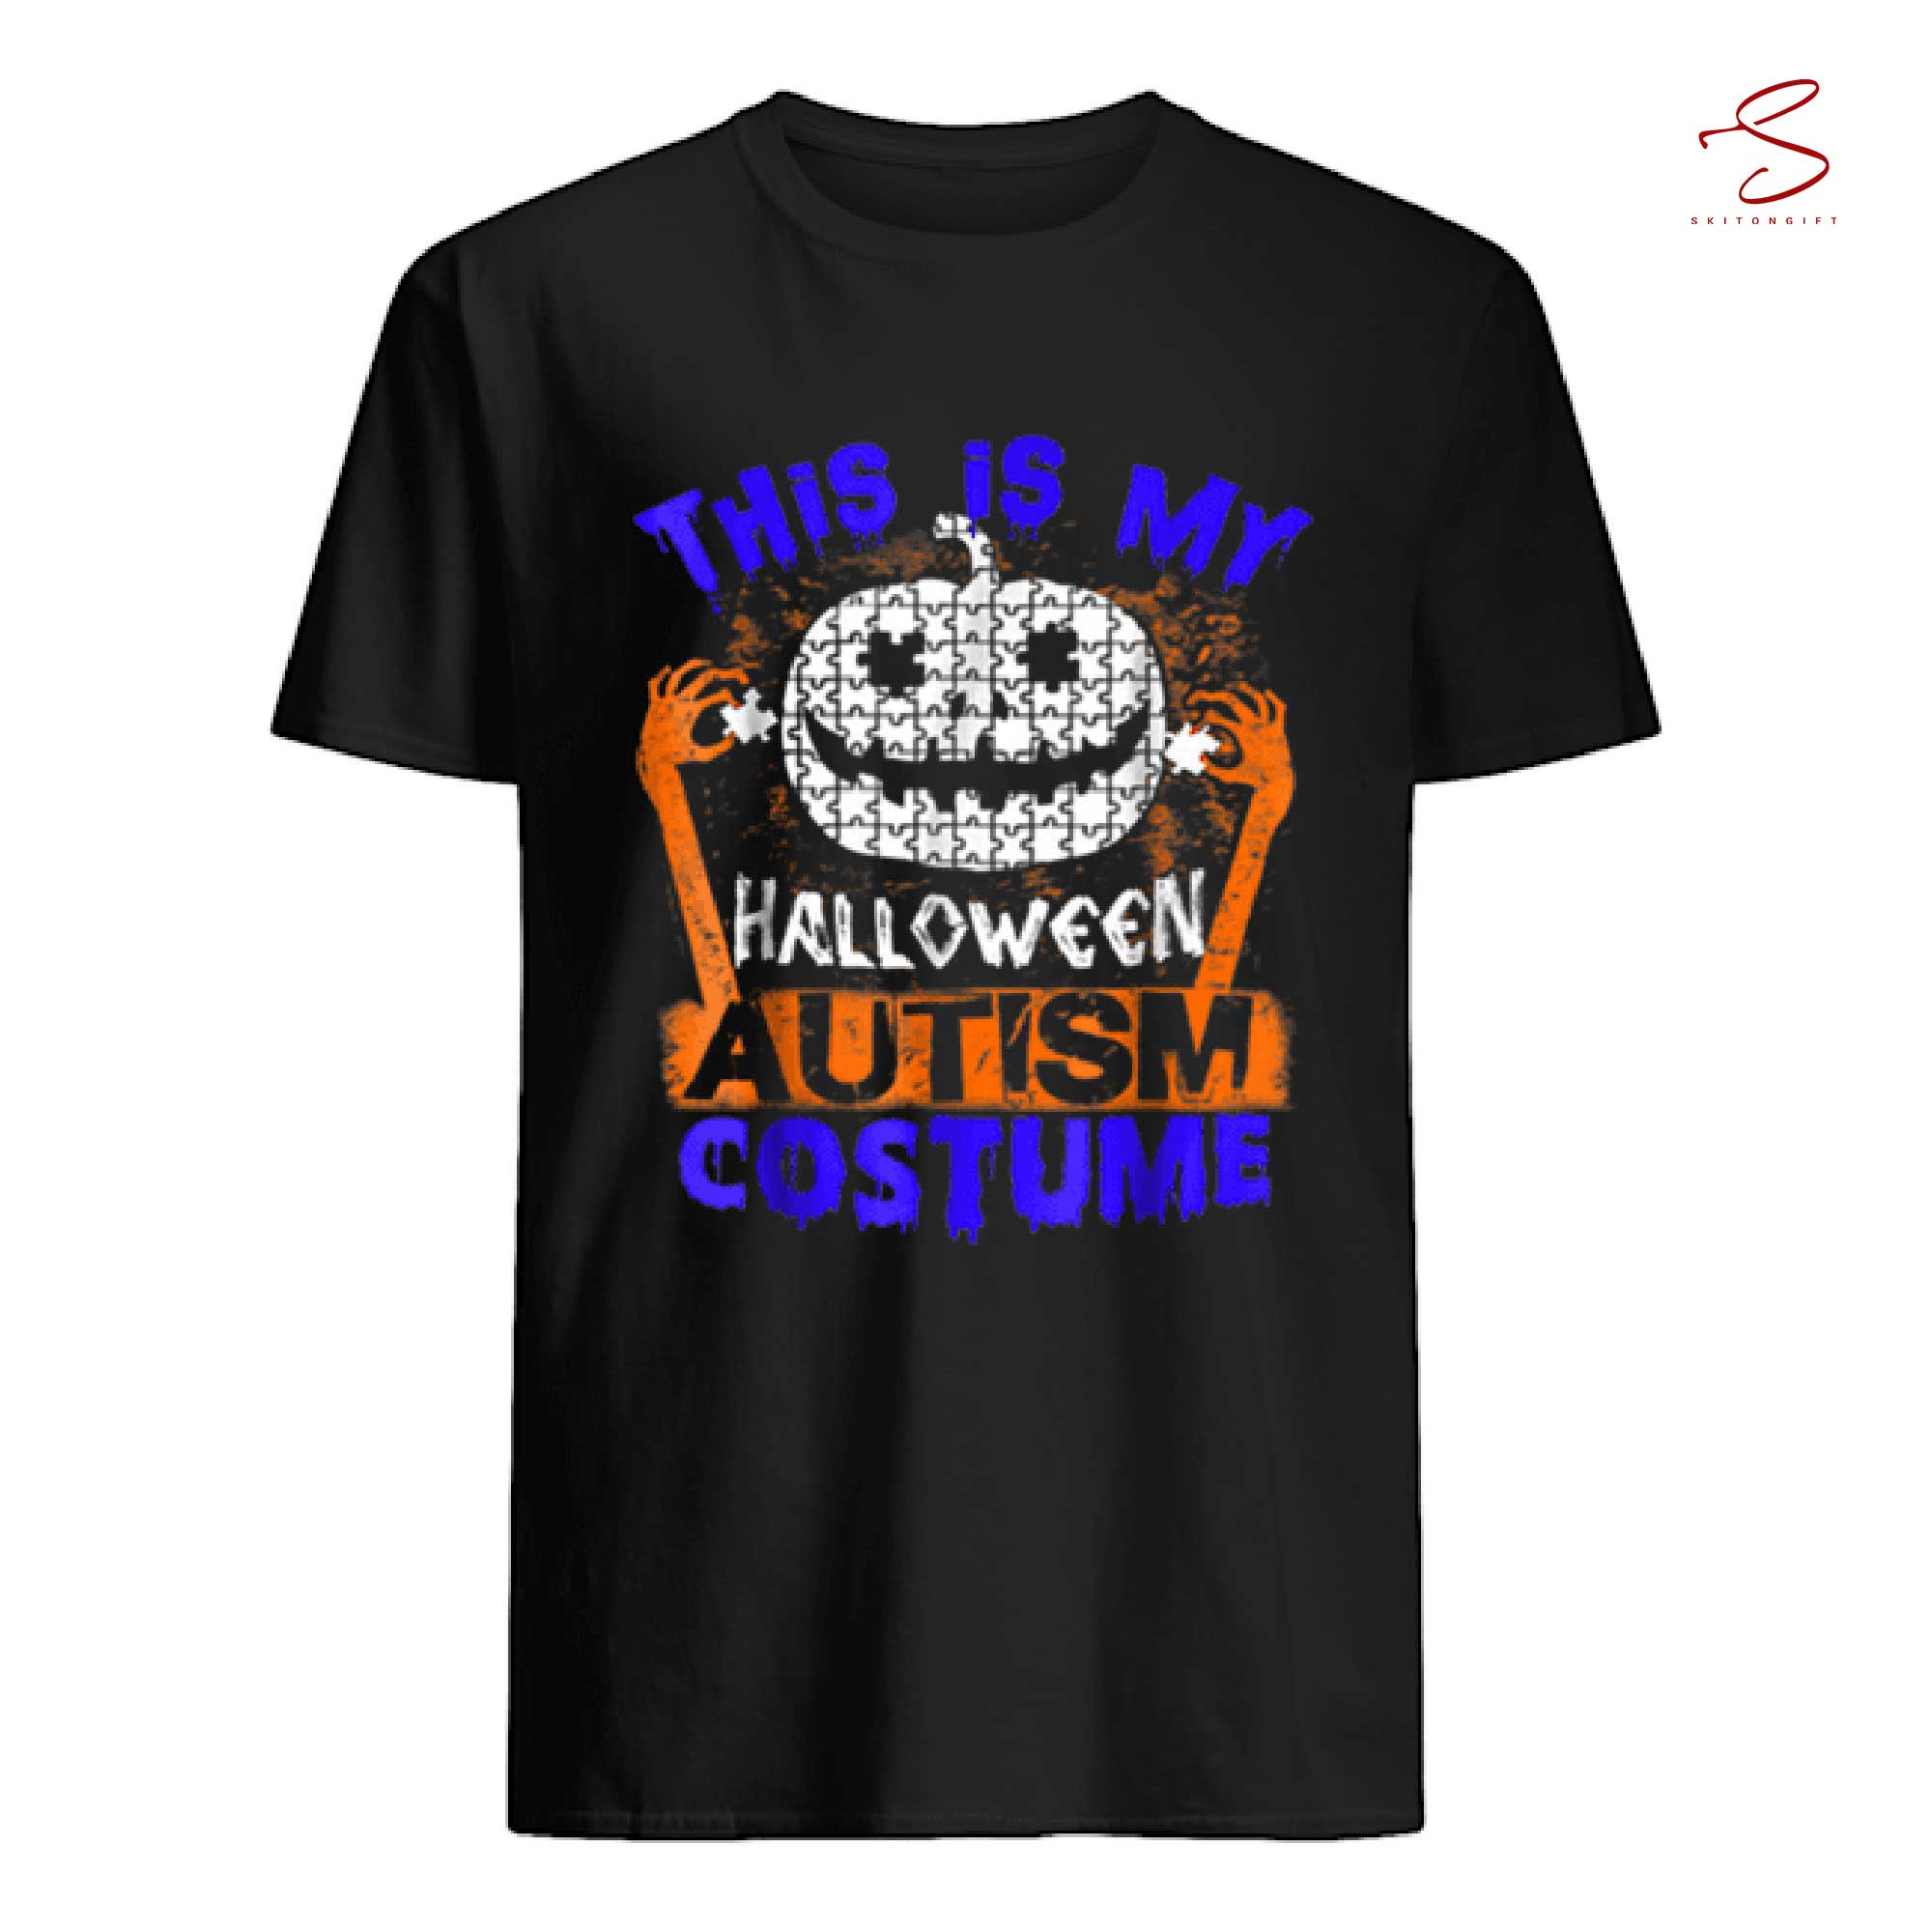 Skitongift Halloween Autism Costume T Shirt